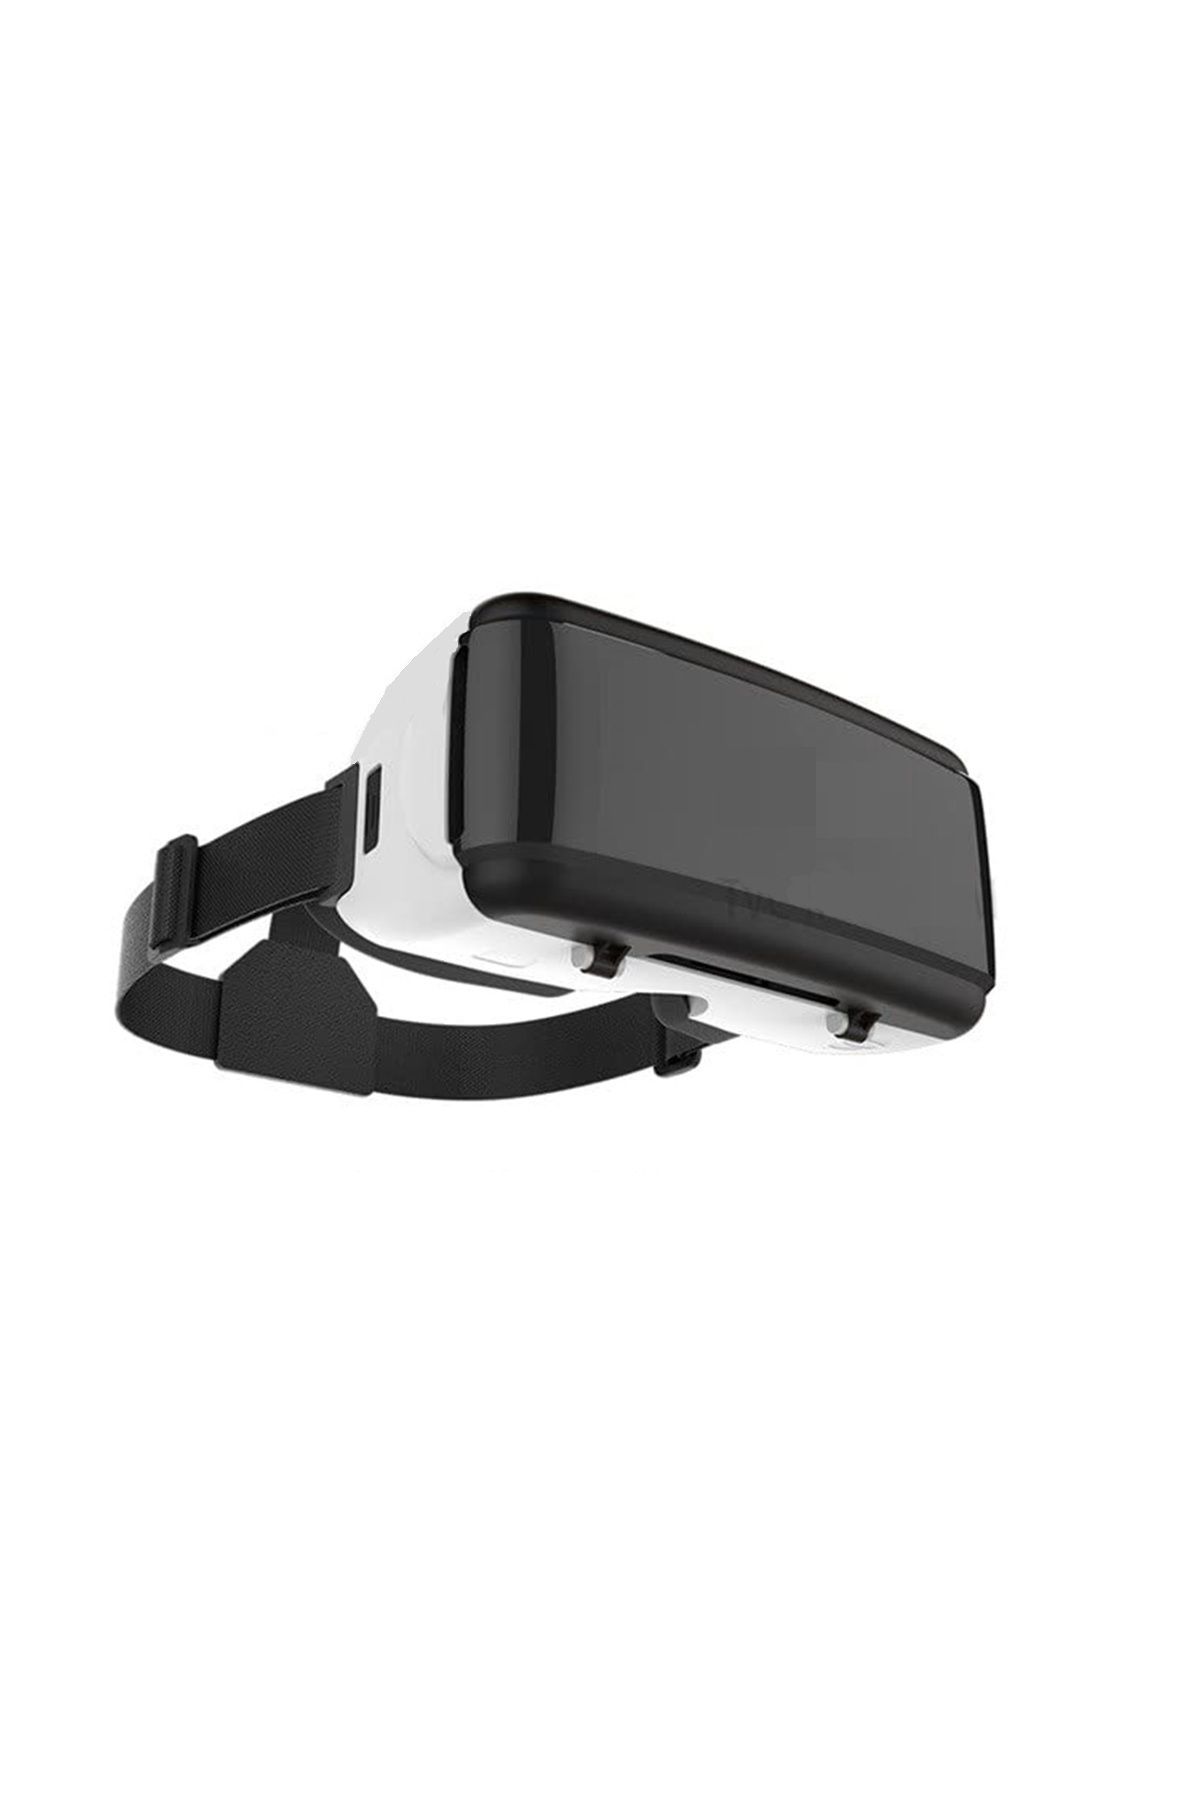 Nikadu Sanal Gerçeklik Gözlüğü 3d Vr Reçine Lens Gözlük Video Oyun ve Filmler Tüm Telefonlara Uyumlu